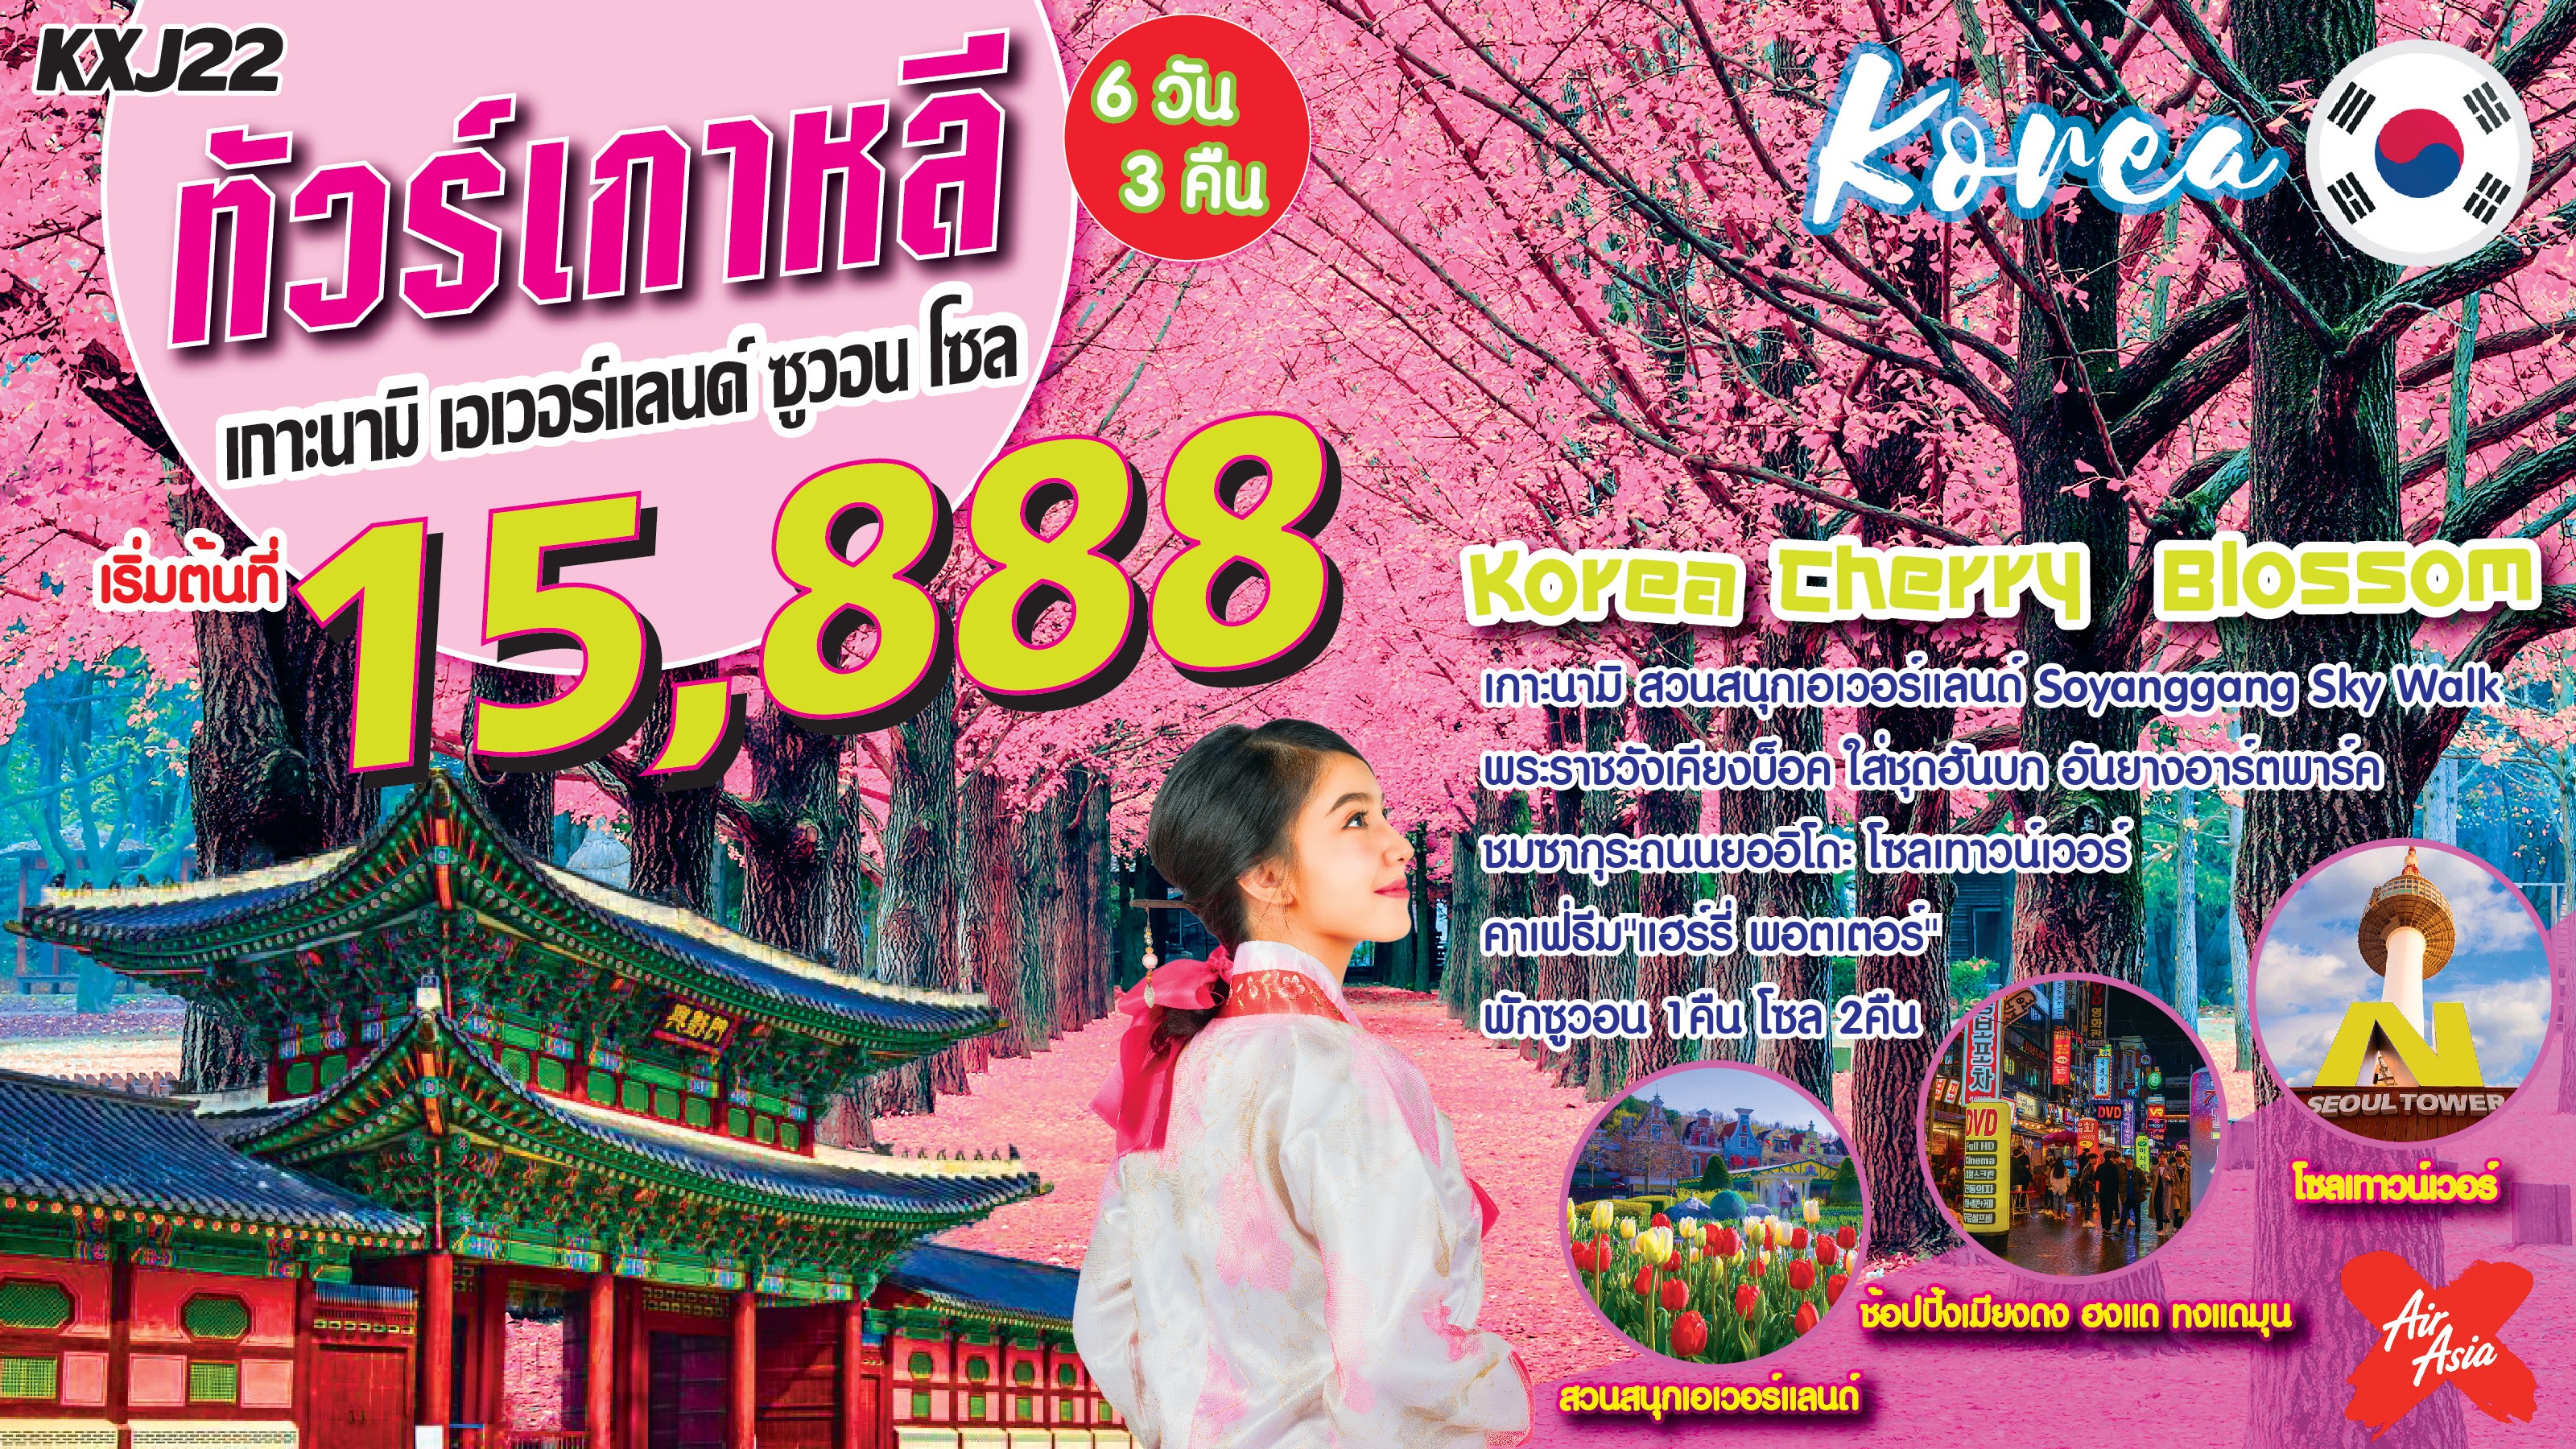 ทัวร์เกาหลี IT-KXJ22 Korea Cherry Blossom เกาหลี ซูวอน โซล 